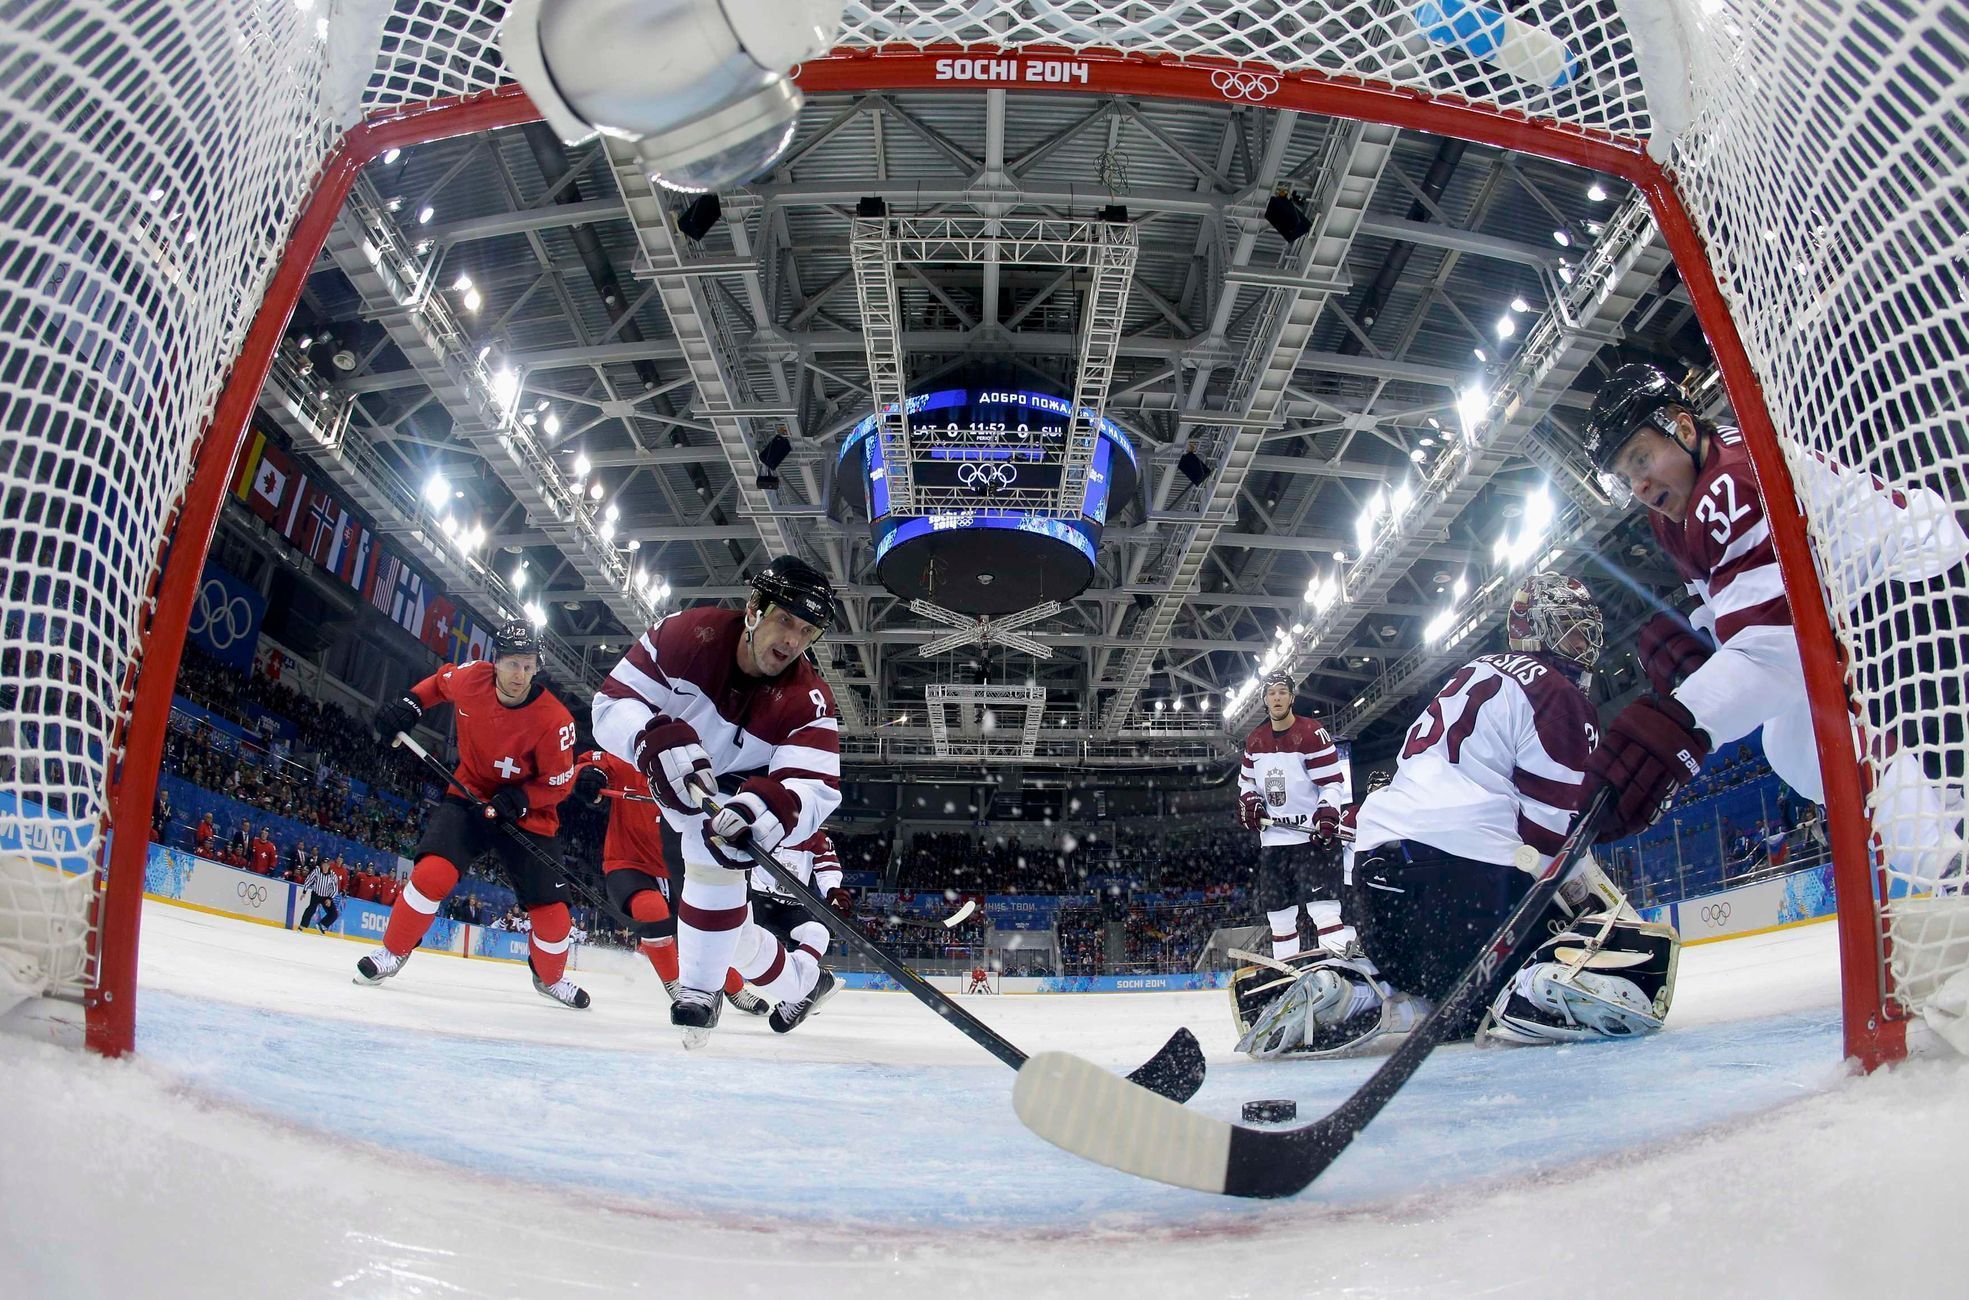 Soči 2014: Lotyšsko - Švýcarsko  (hokej, muži, skupina C)